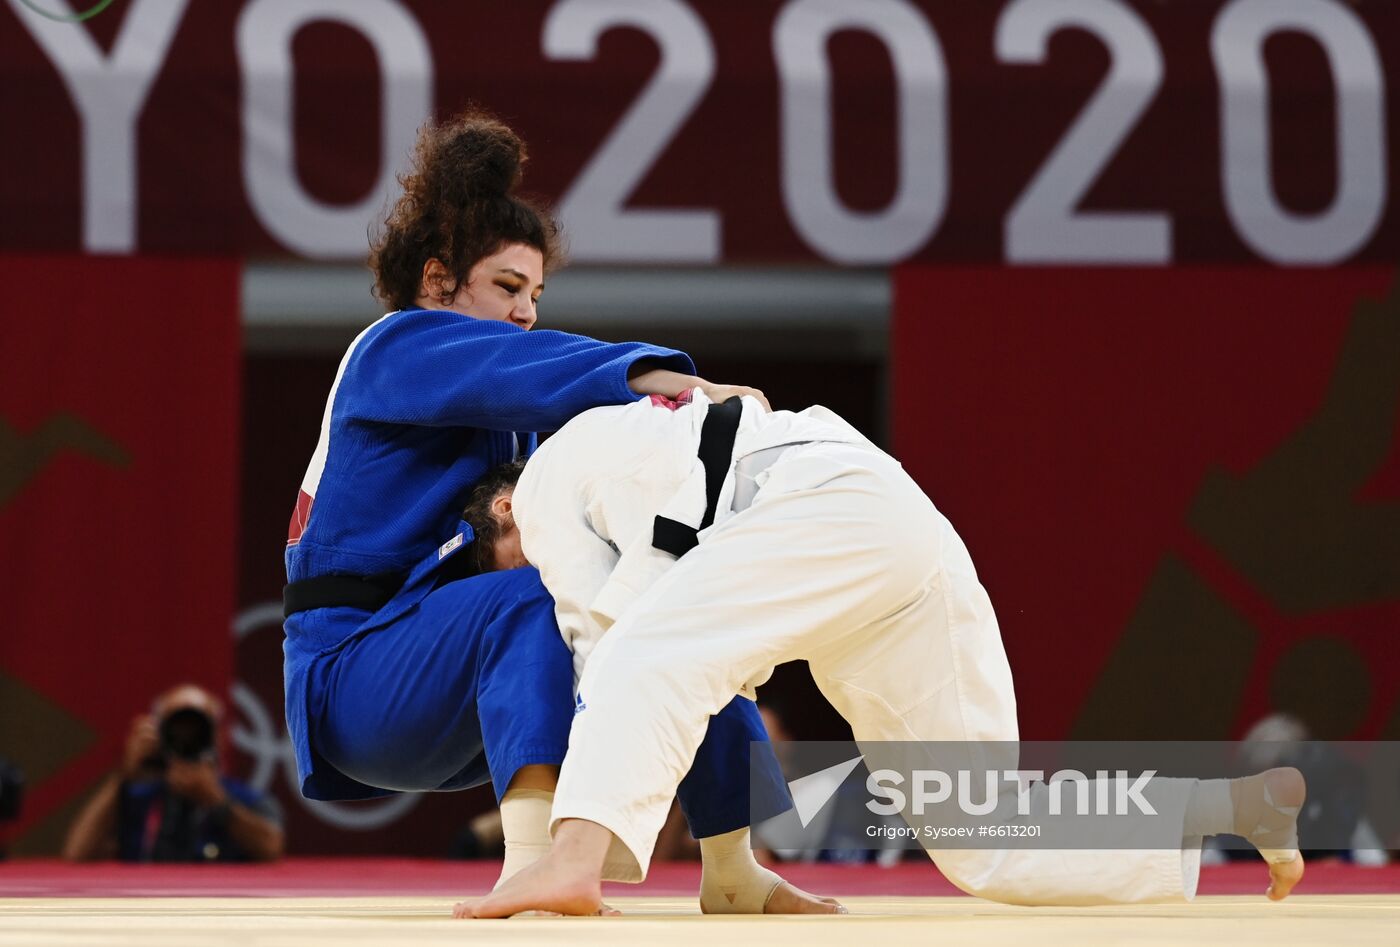 Japan Olympics 2020 Judo Mixed Team